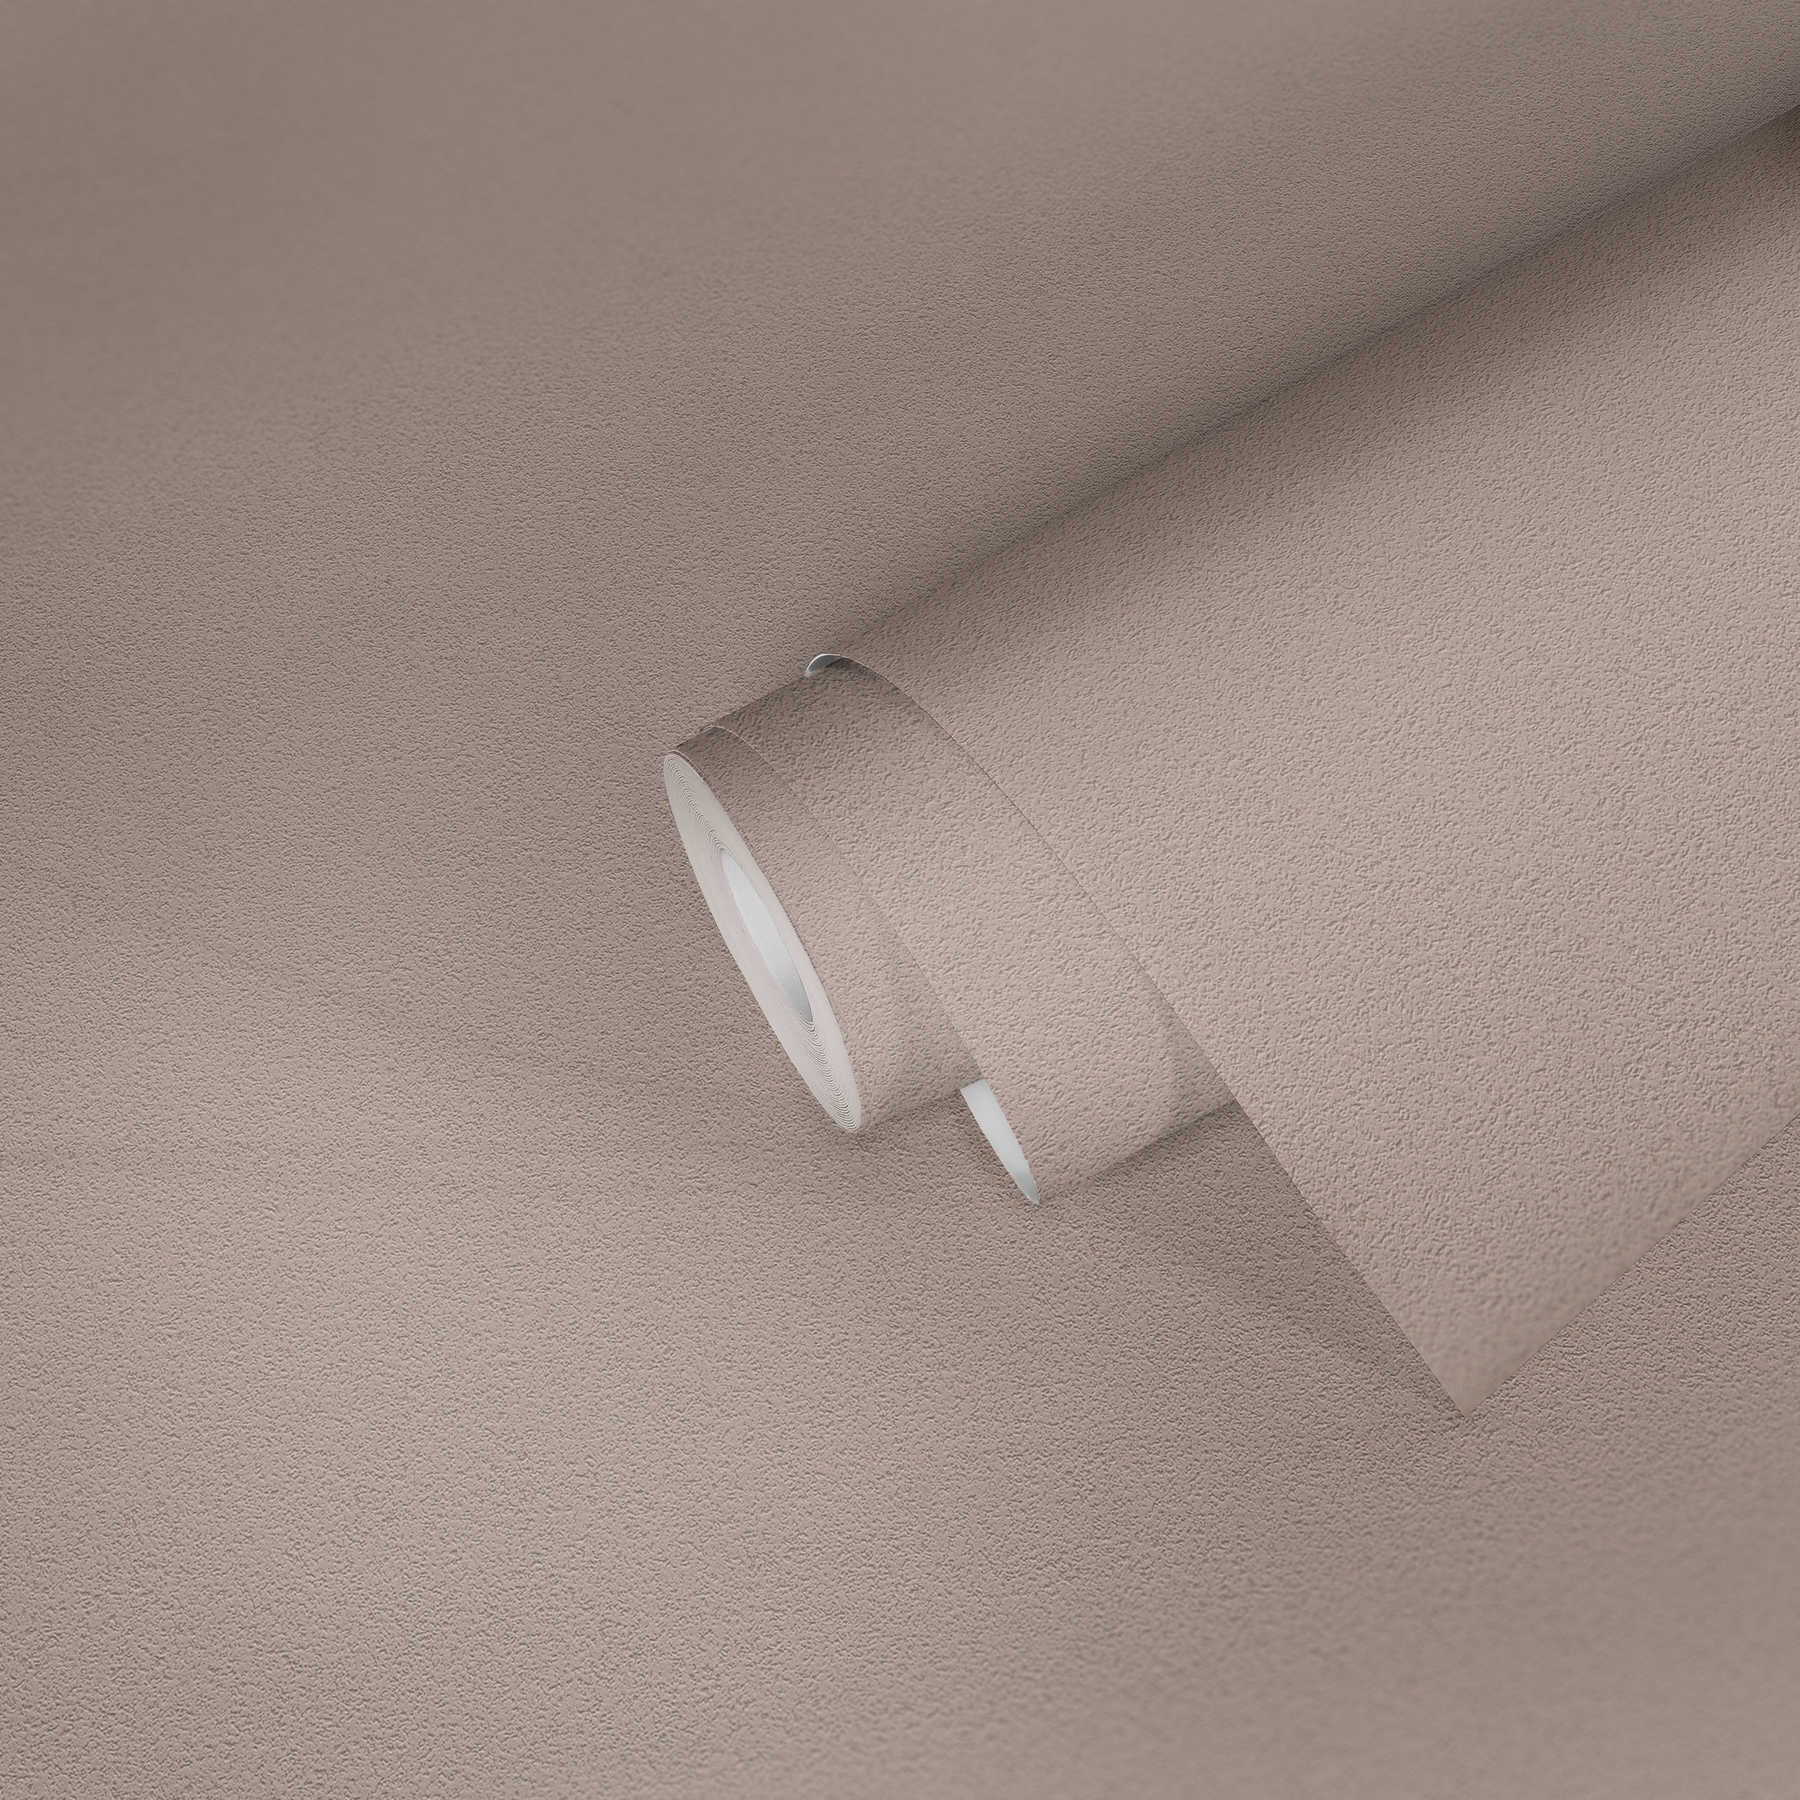             Papier peint uni avec structure de surface fine - marron
        